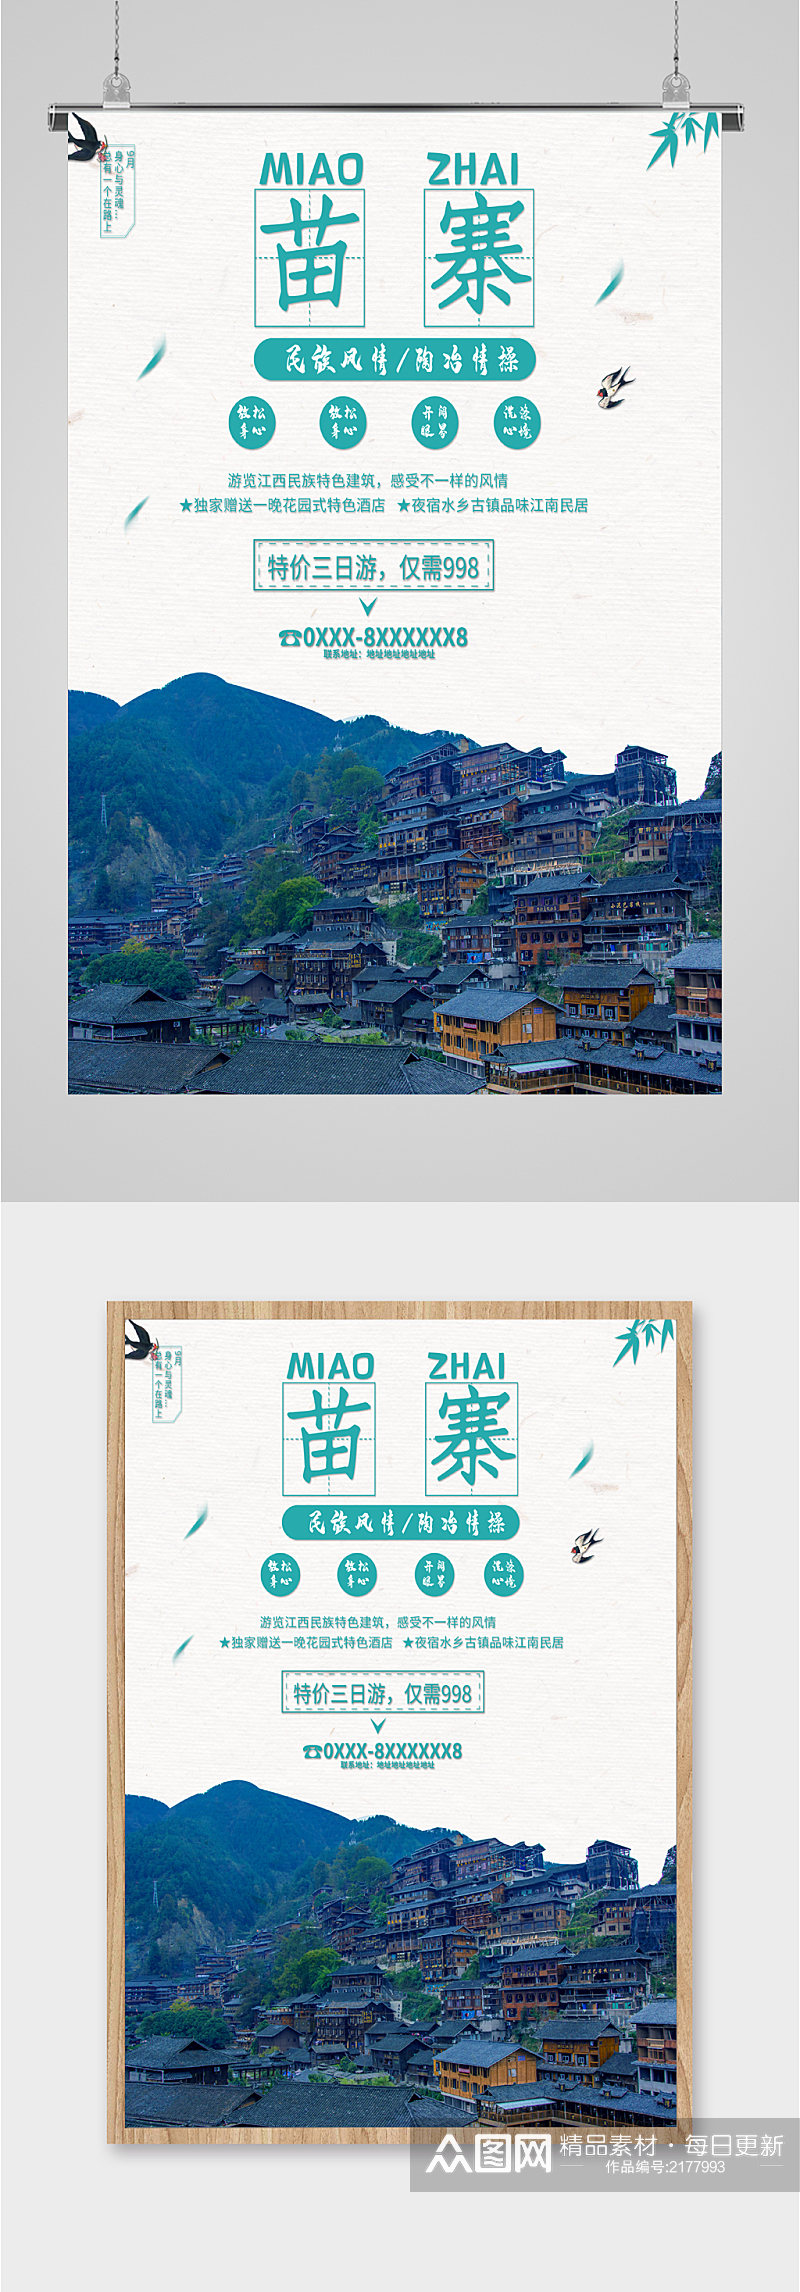 苗寨风景旅游海报素材